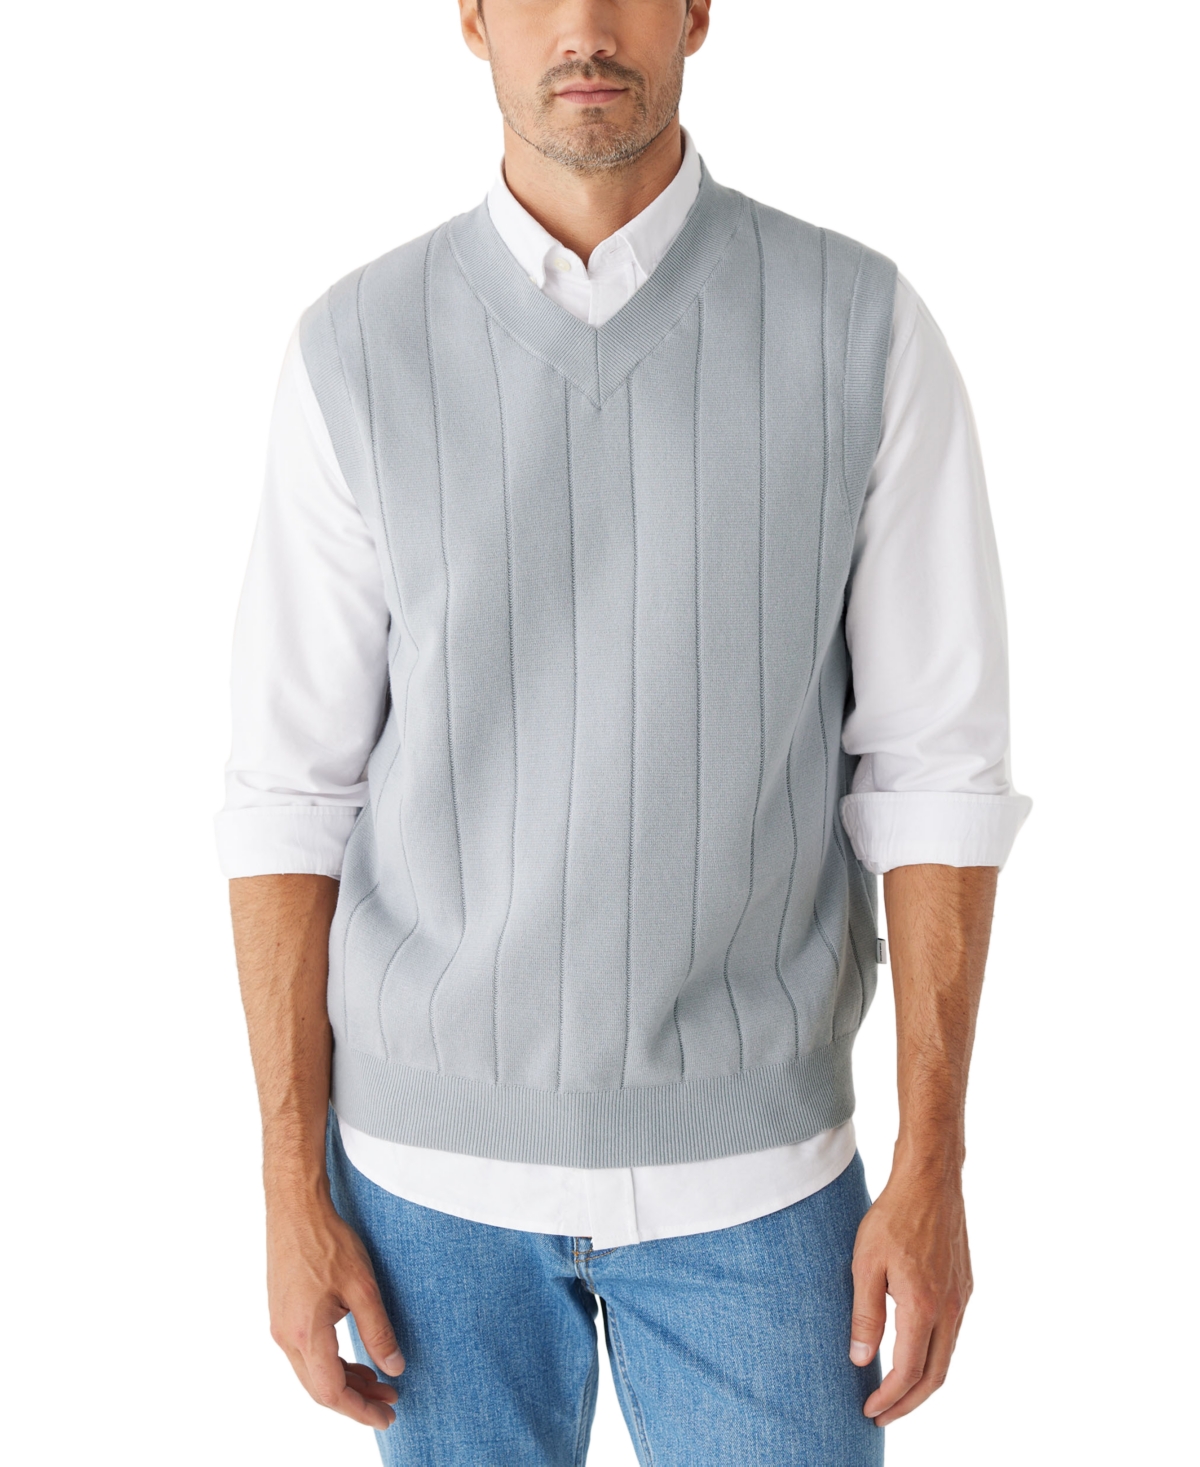 Men's Cotton V-Neck Sweater Vest - Quarry